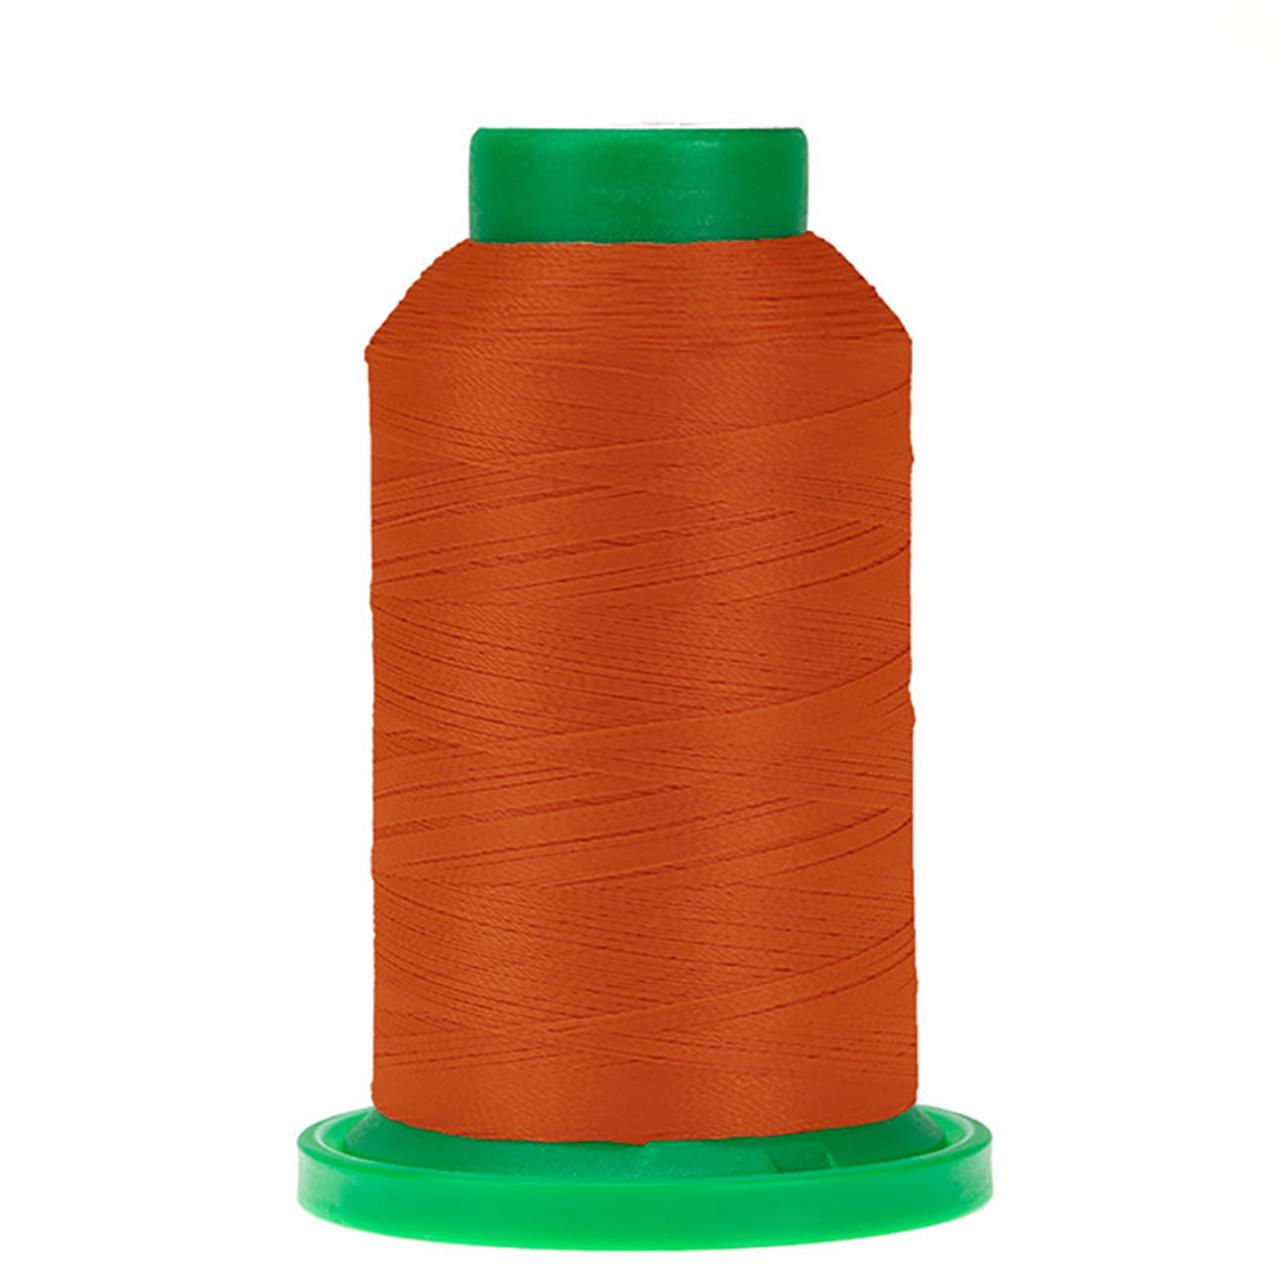 Thread - Isacord - Dark Orange - 2922-1321 - Special Order